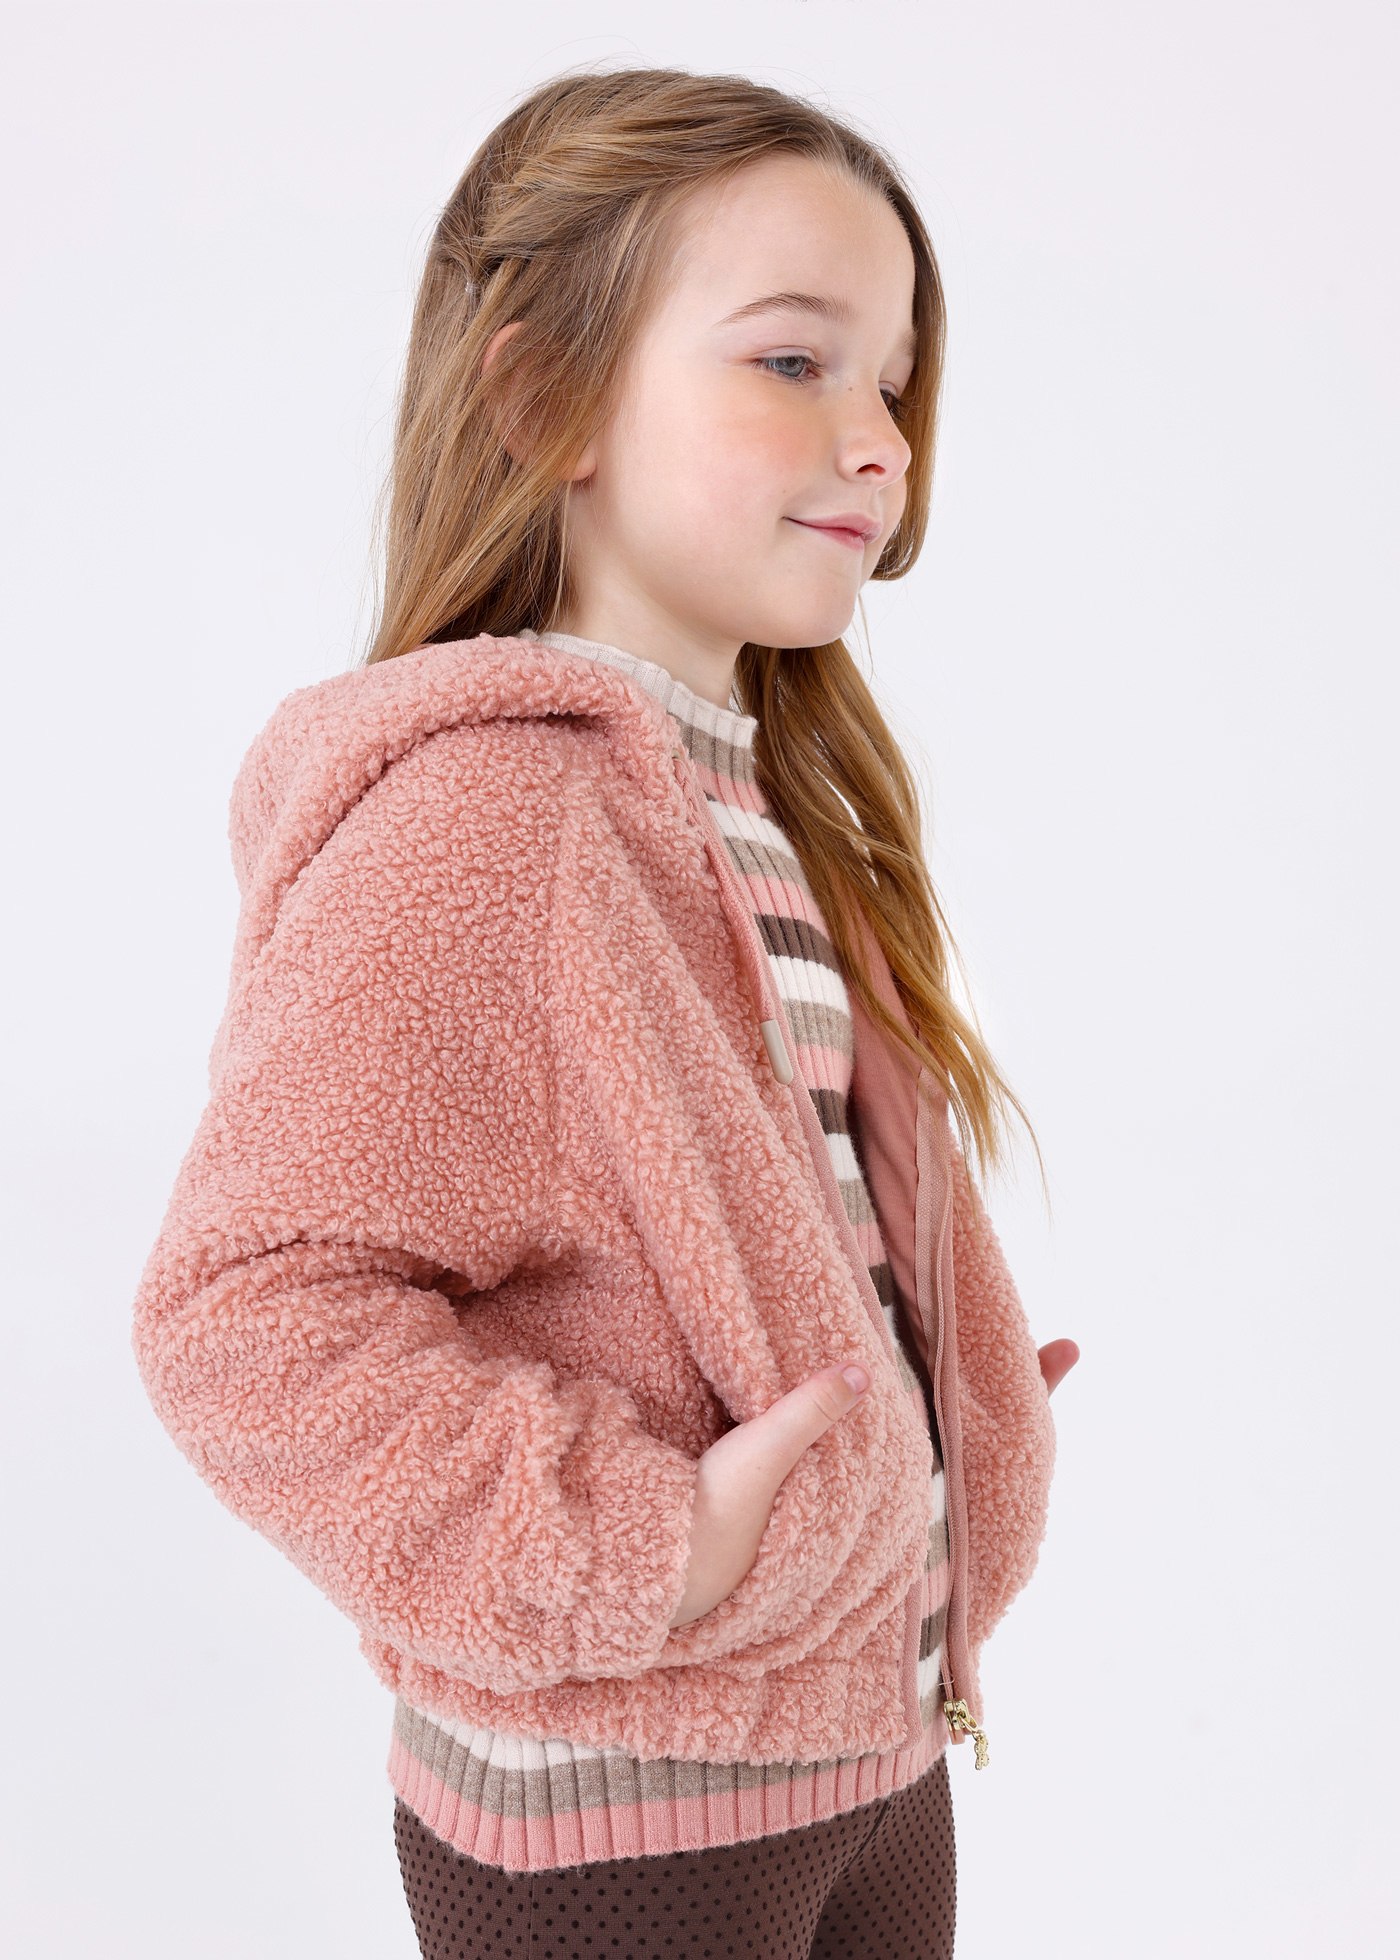 Kids Baby Girls Fluffy Fur Teddy Bear Hooded Coat Winter Fleece Jacket  Outerwear | eBay